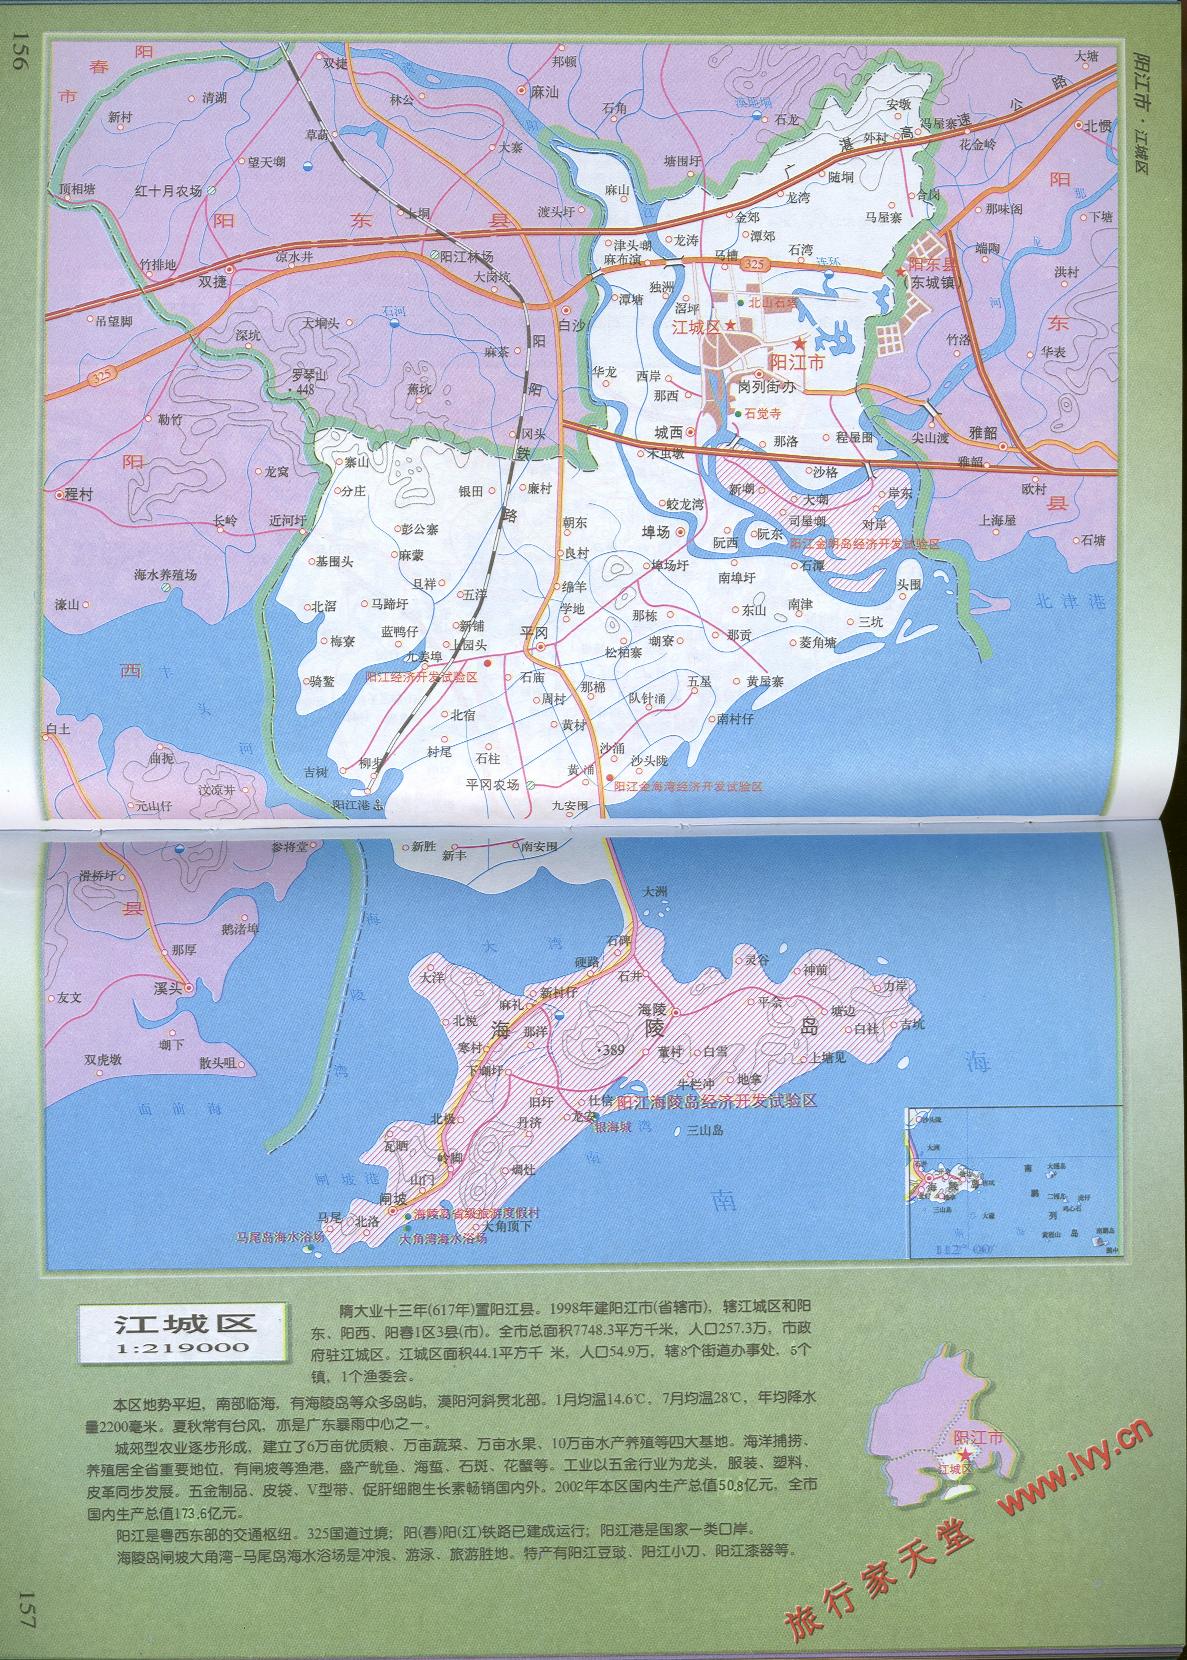 阳江市地图全图高清版下载|广东省阳江市地图高清版下载jpg格式_ 绿色图片